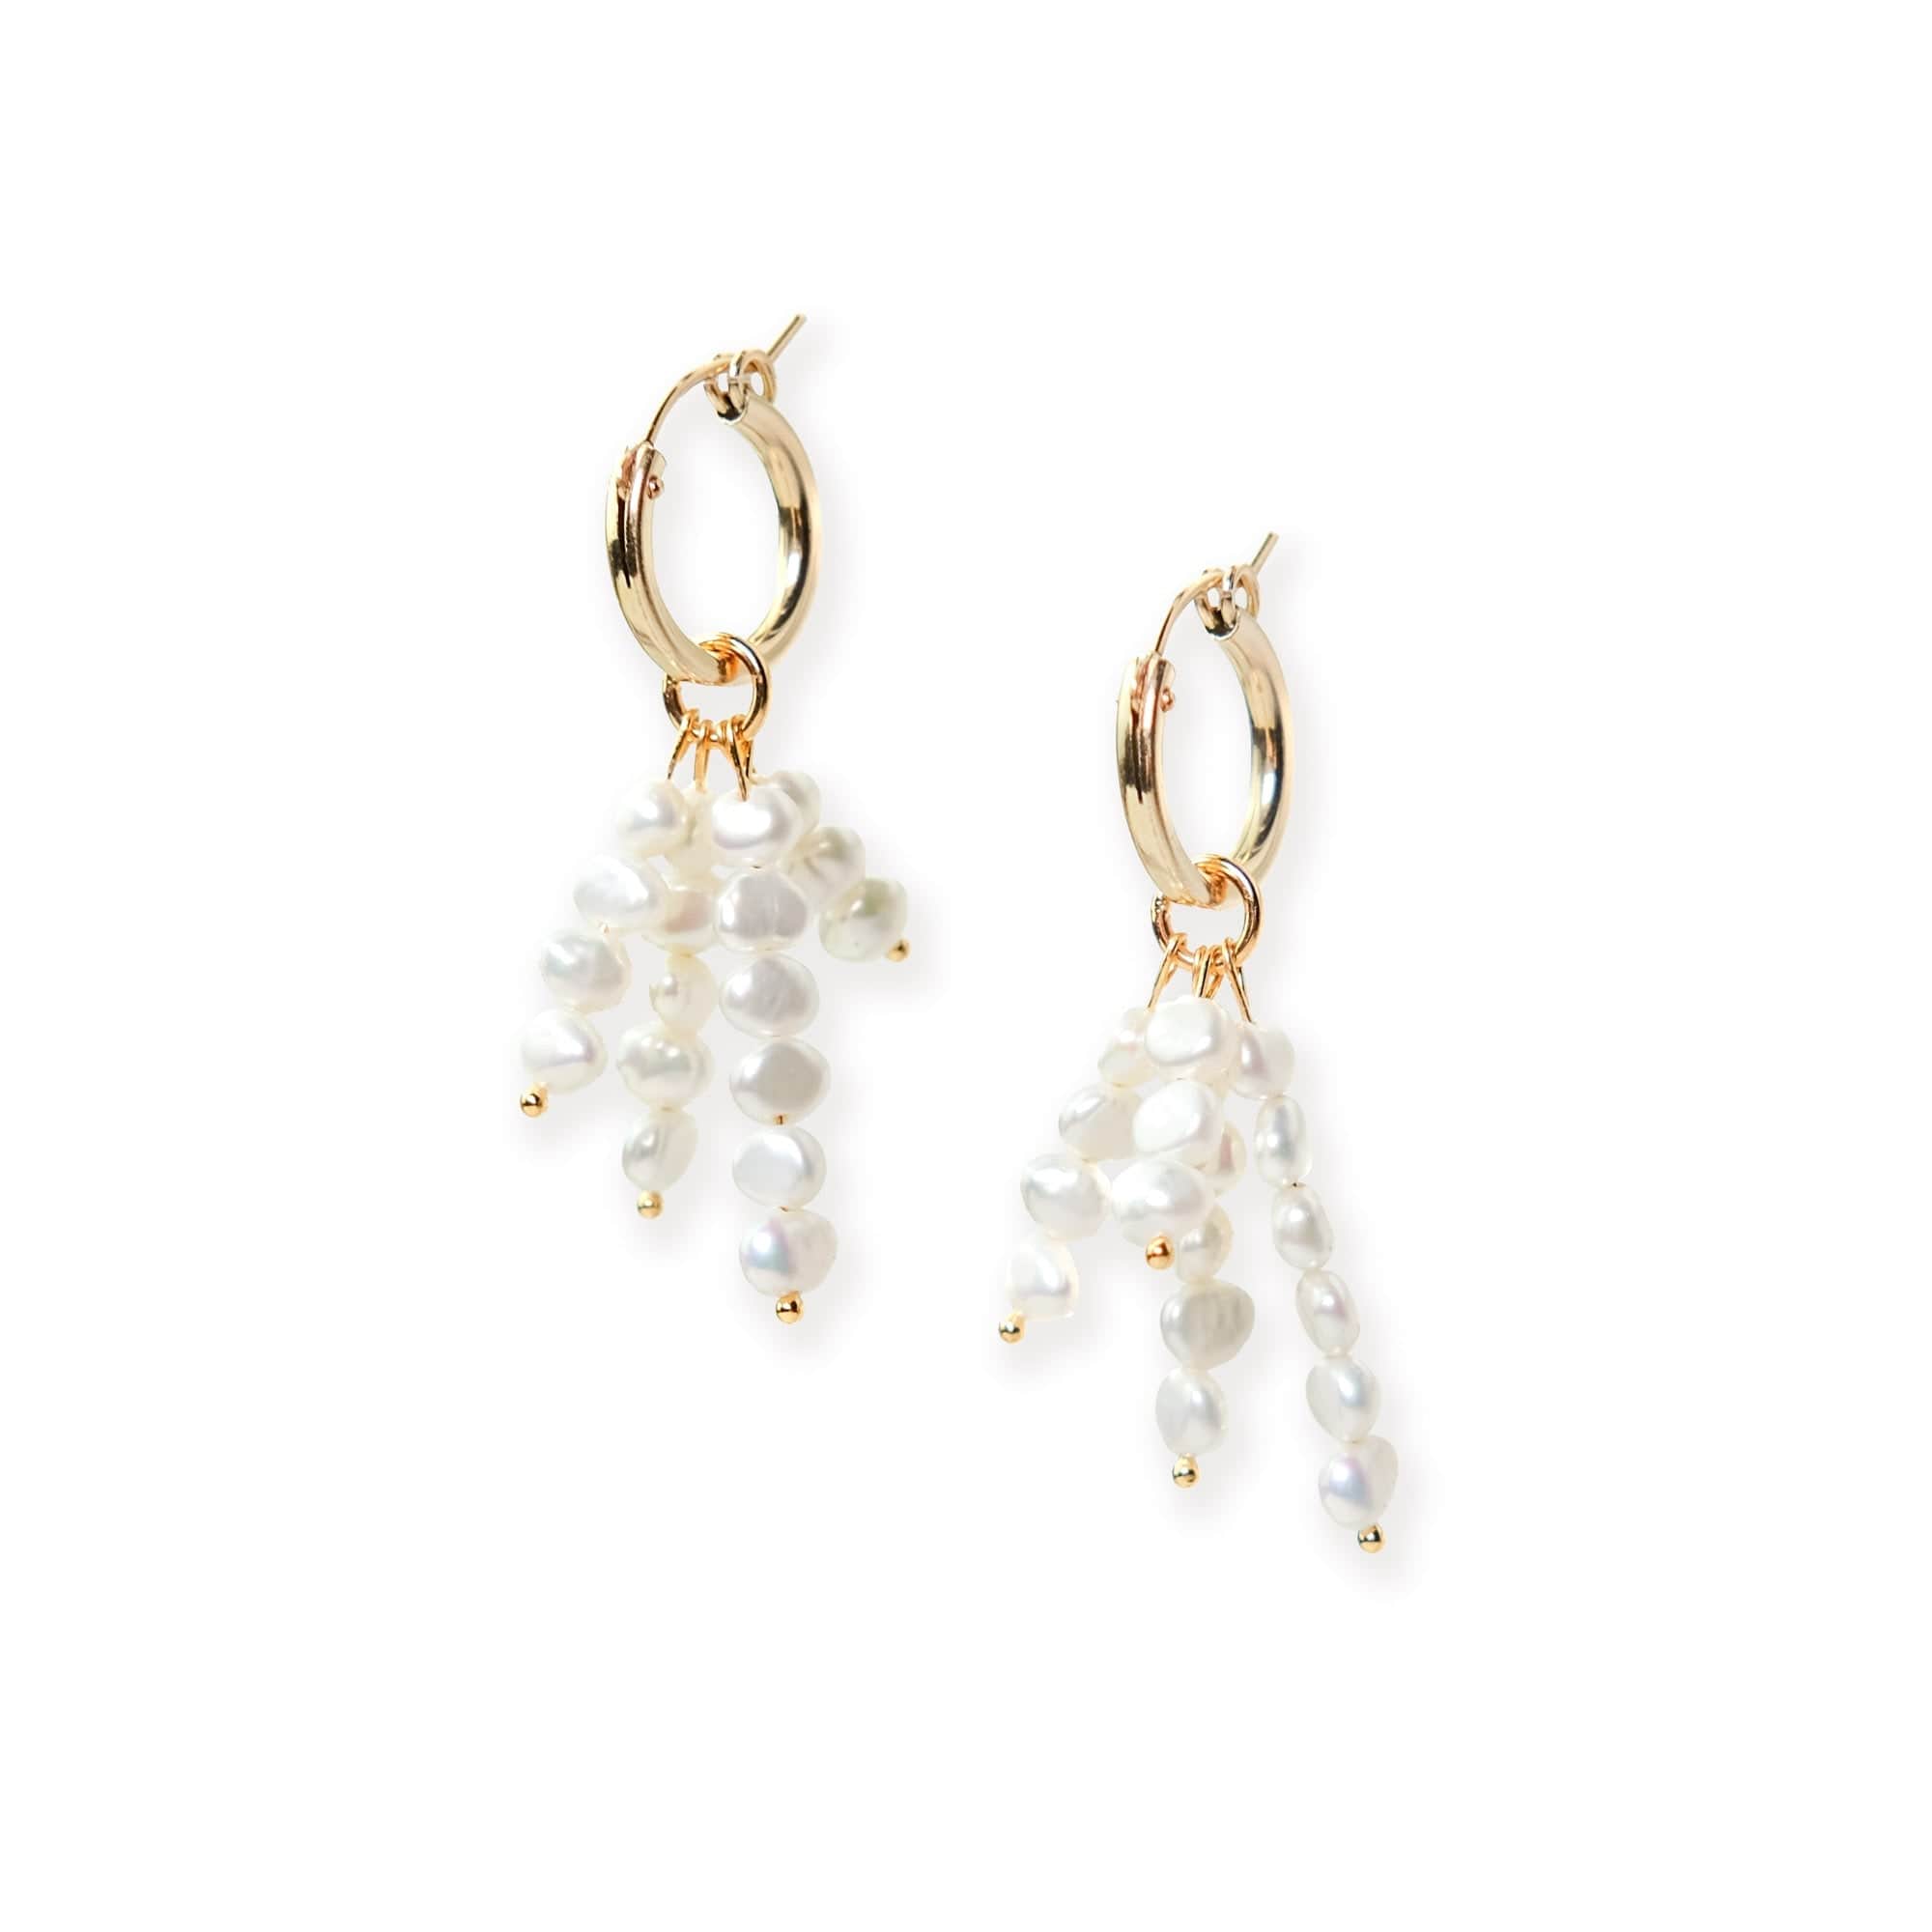 Elegant and fun freshwater pearl tassel earrings on 14k gold filled hoops